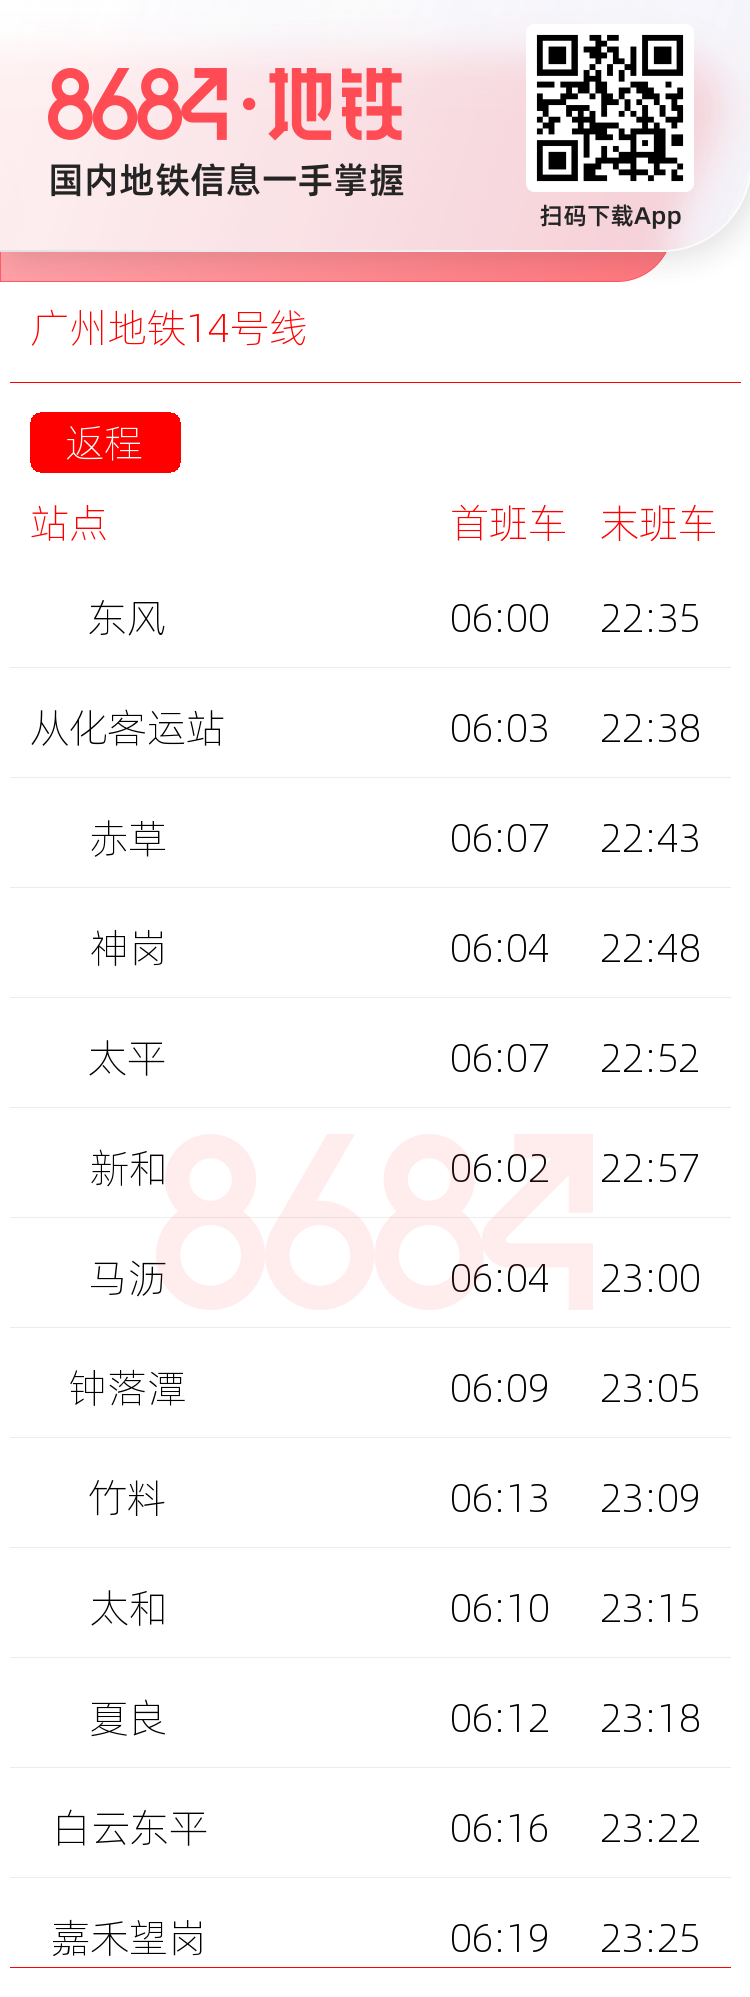 广州地铁14号线运营时间表